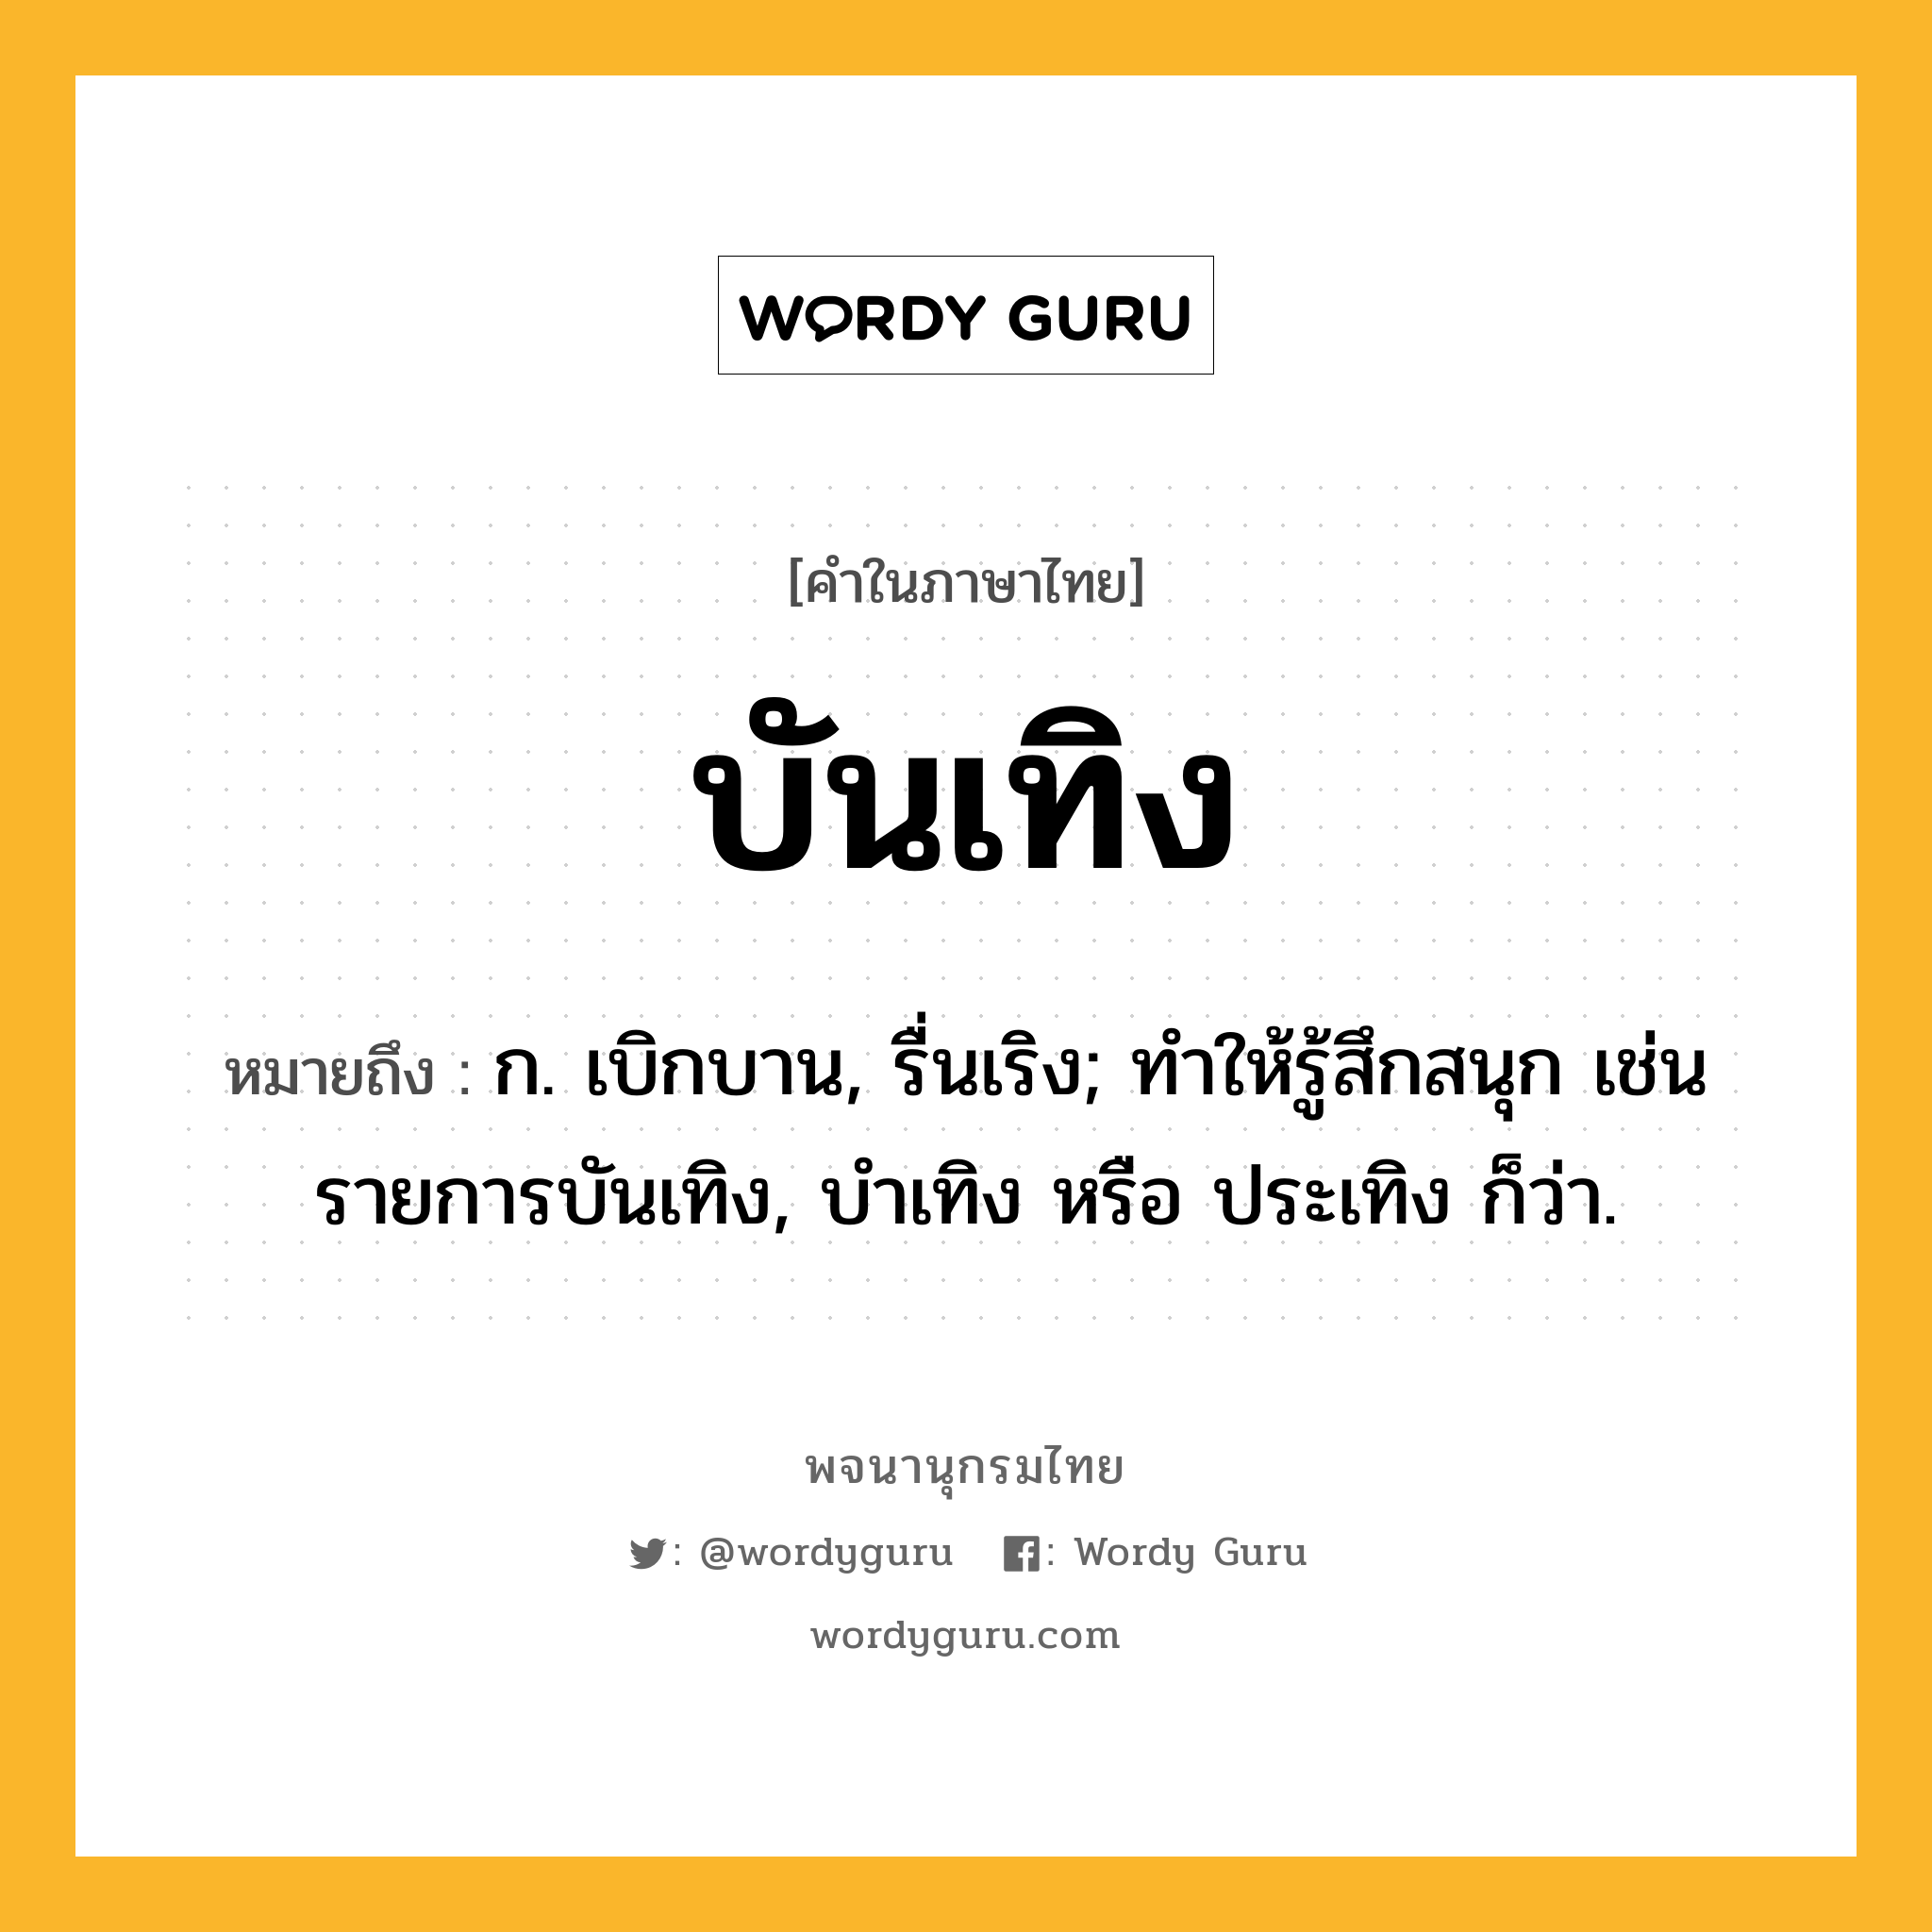 บันเทิง ความหมาย หมายถึงอะไร?, คำในภาษาไทย บันเทิง หมายถึง ก. เบิกบาน, รื่นเริง; ทําให้รู้สึกสนุก เช่น รายการบันเทิง, บำเทิง หรือ ประเทิง ก็ว่า.